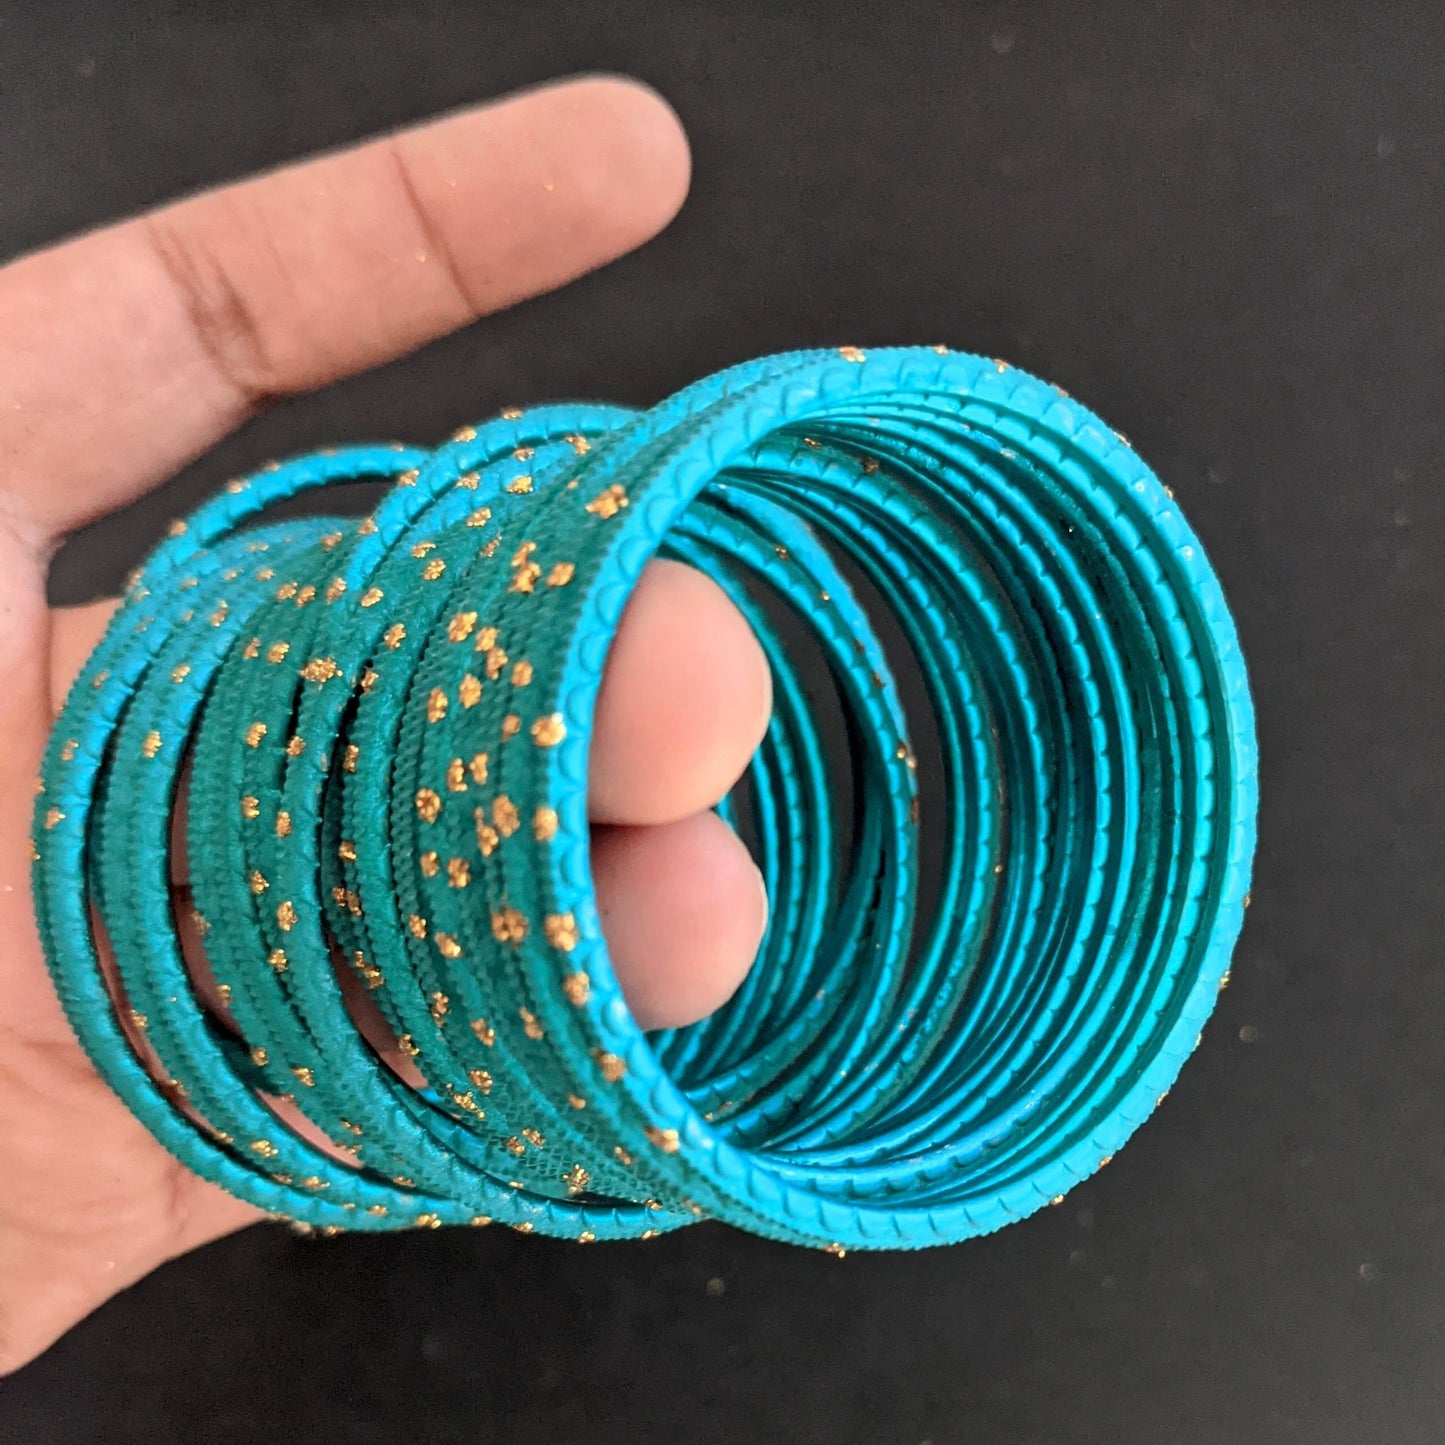 SALE - Toddler Bangles / Colorful Metal Bangles / Set of 12 Bangle Bracelets - Design 1